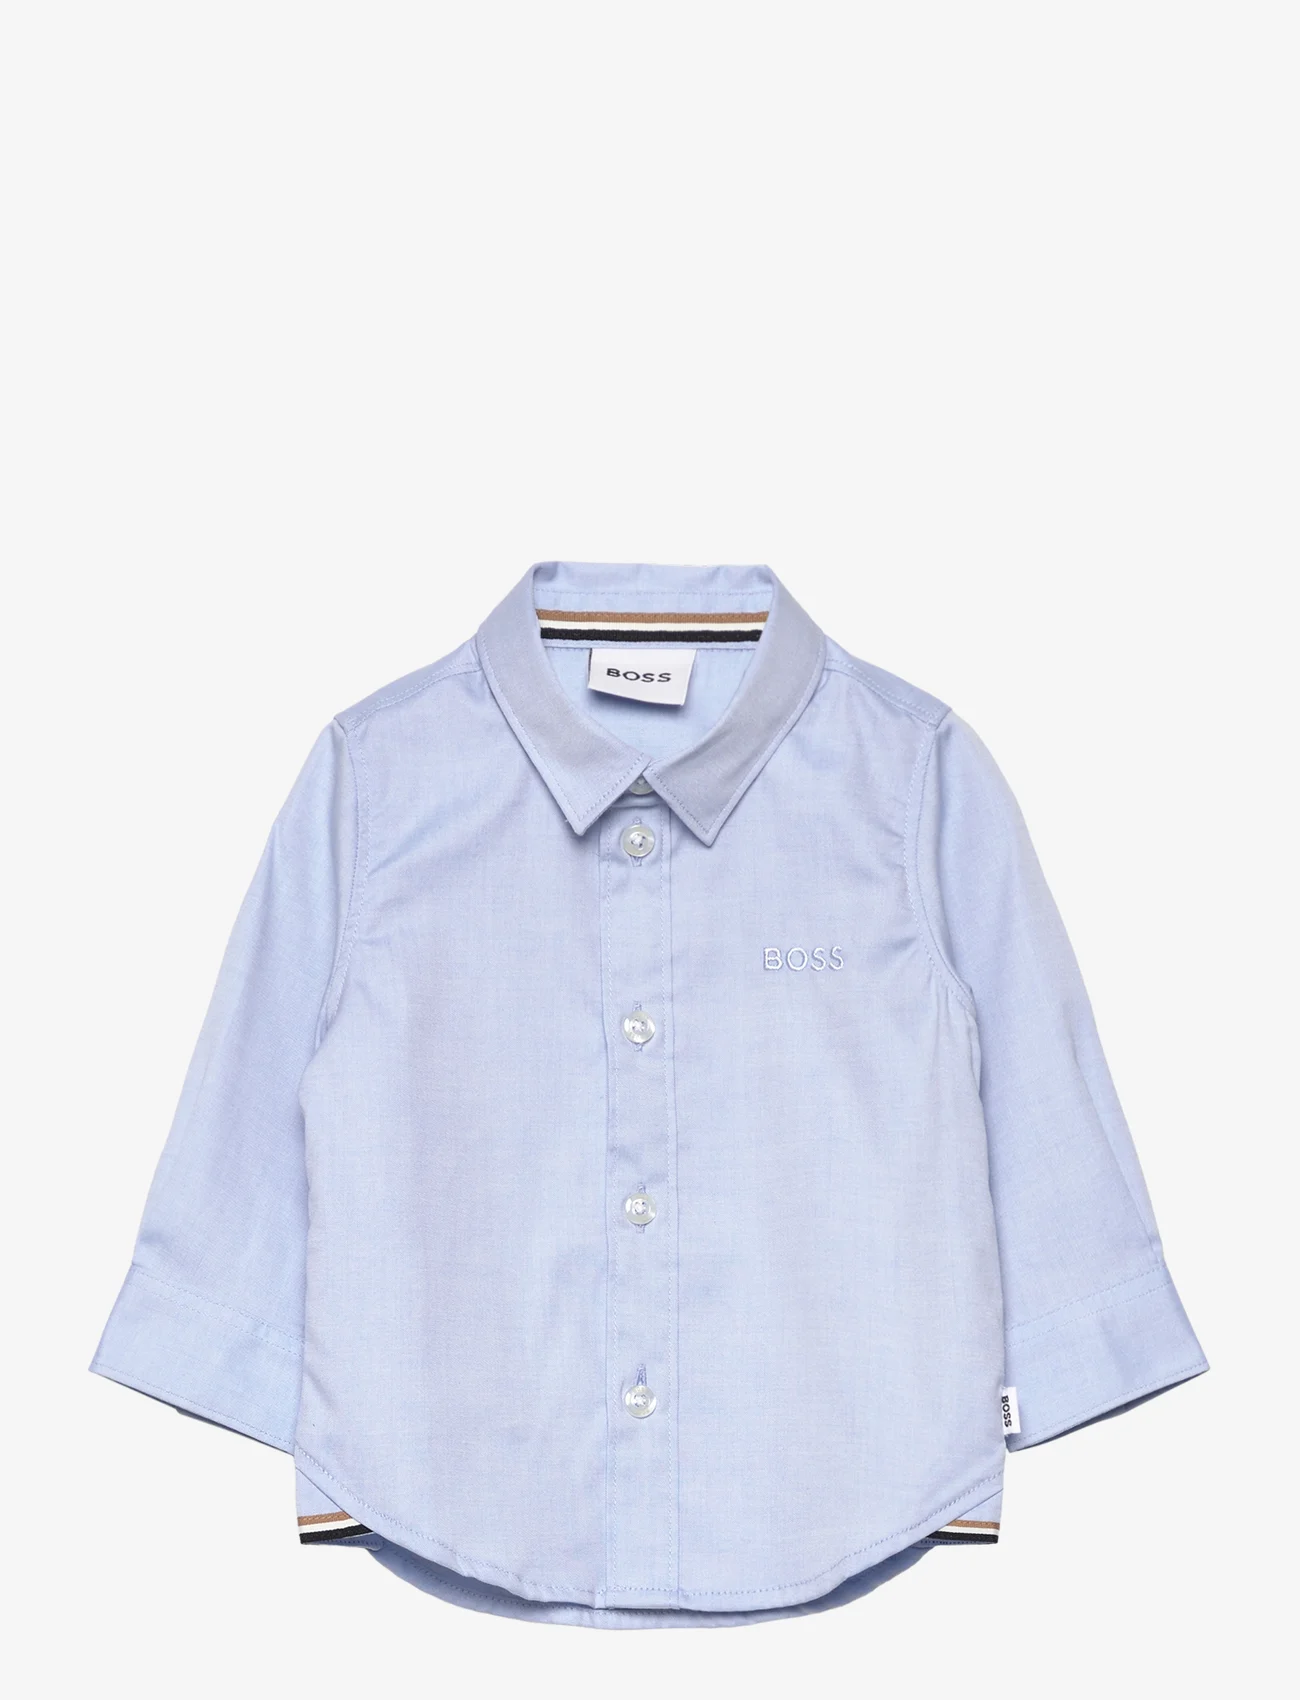 BOSS - LONG SLEEVED SHIRT - langærmede skjorter - pale blue - 0